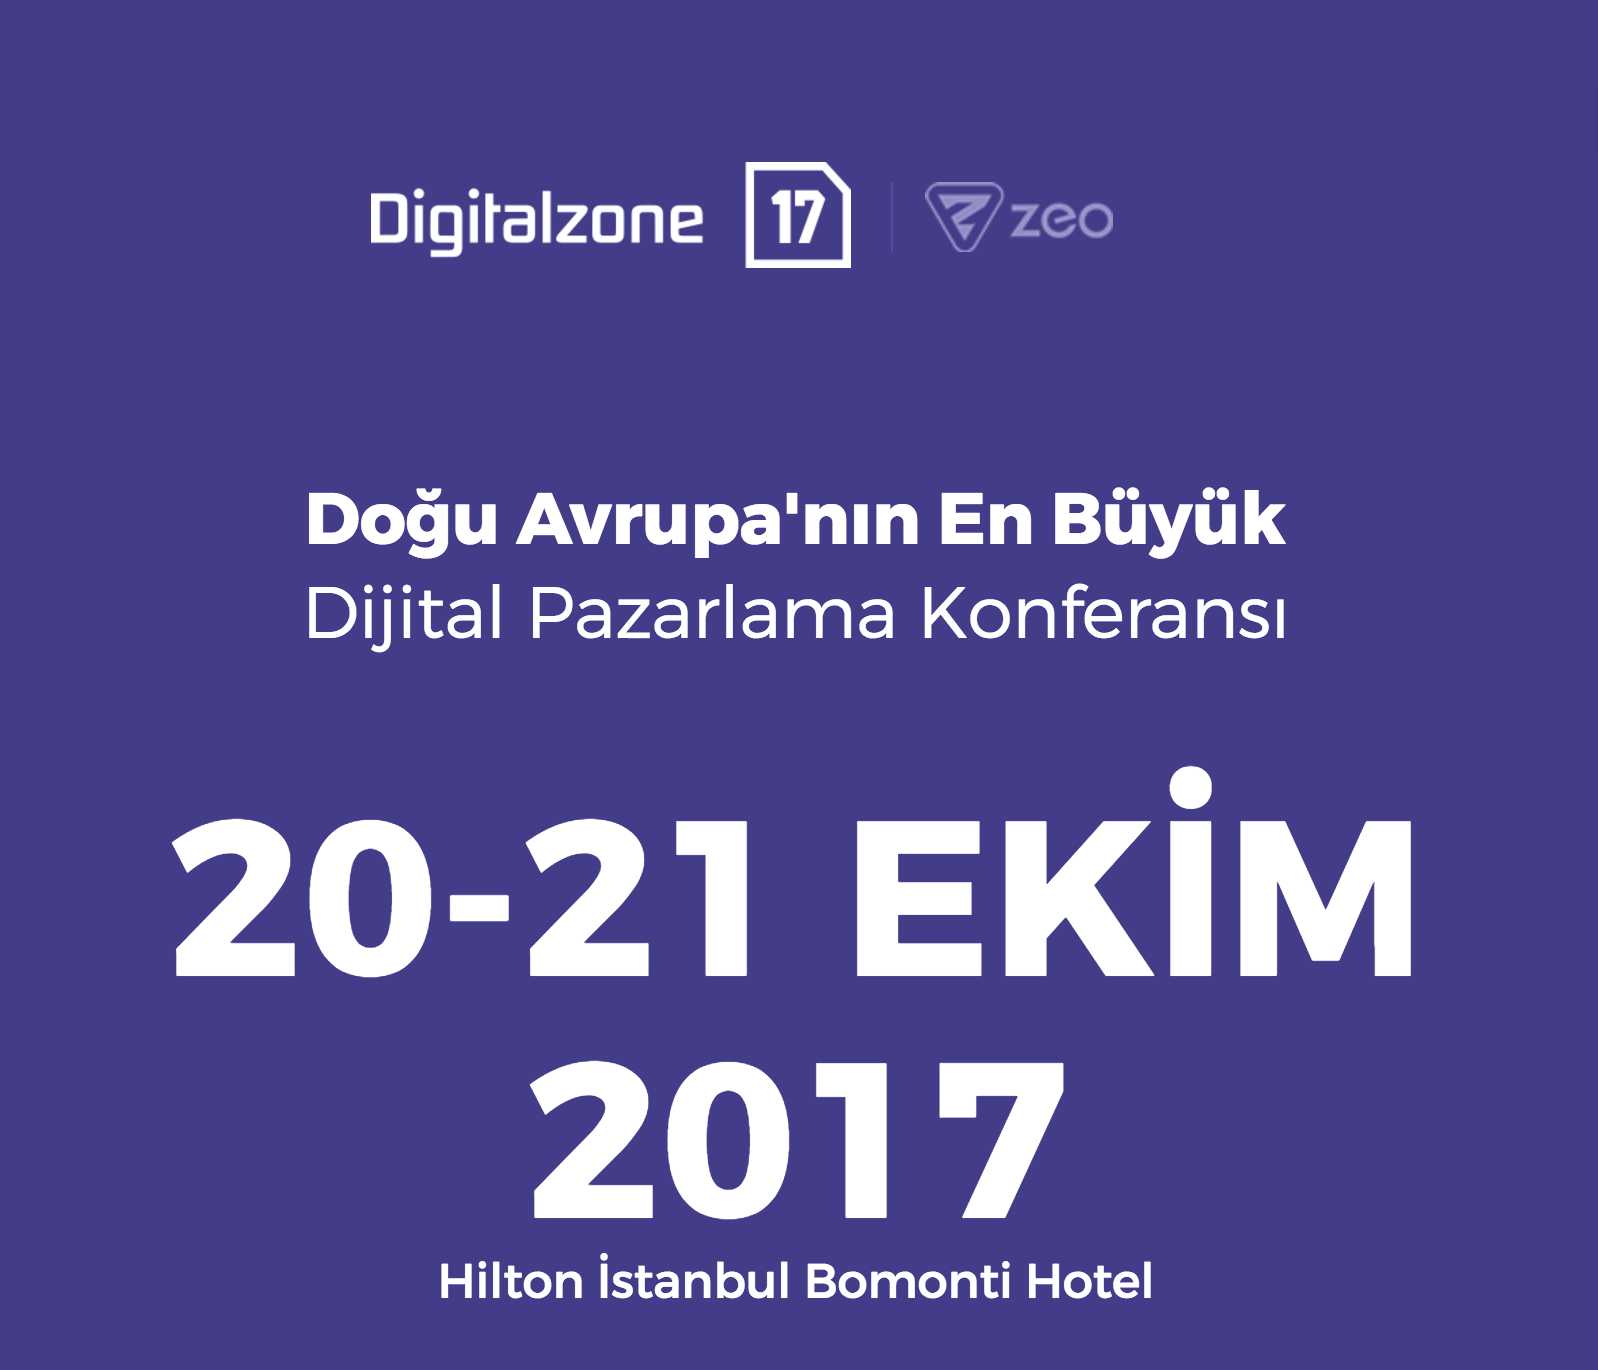 Digitalzone, Uluslararası Dijital Pazarlama Konferansı